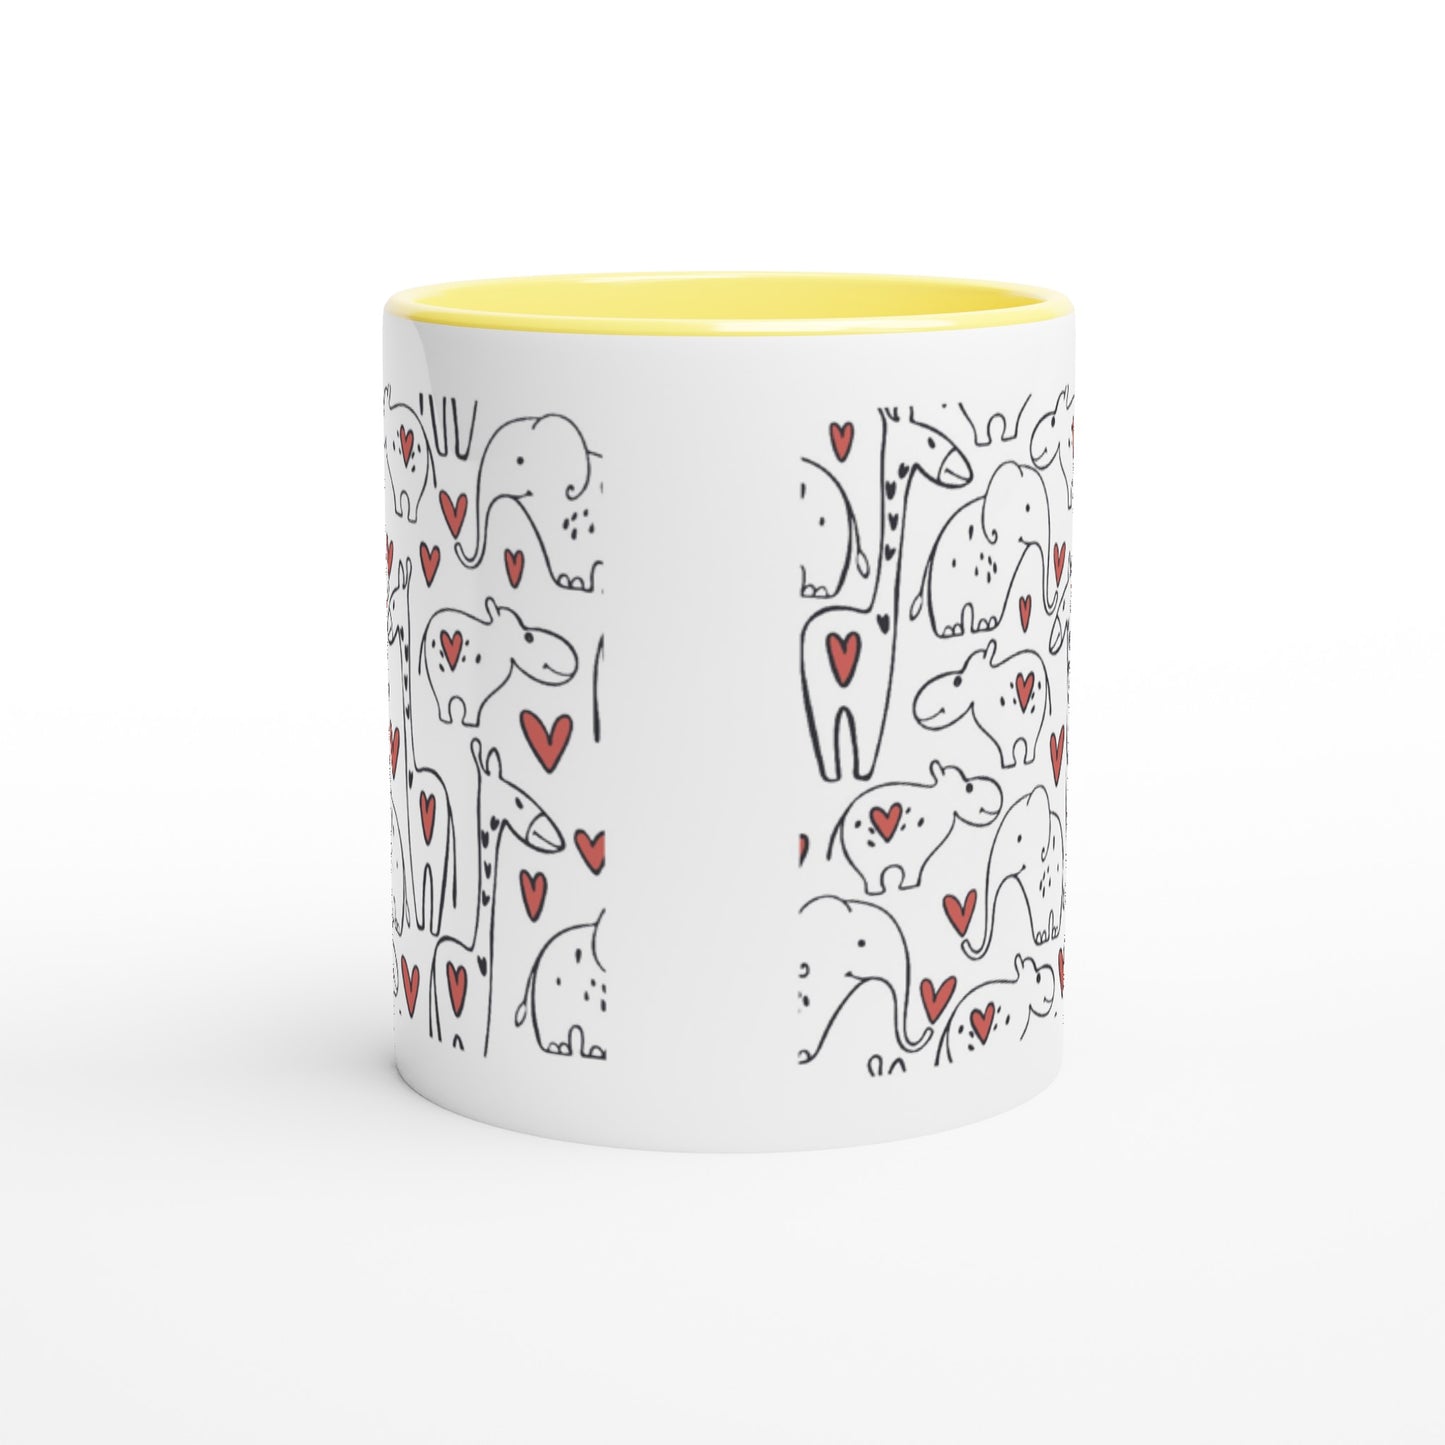 White 11oz Ceramic Mug with Color Inside "Wild love"